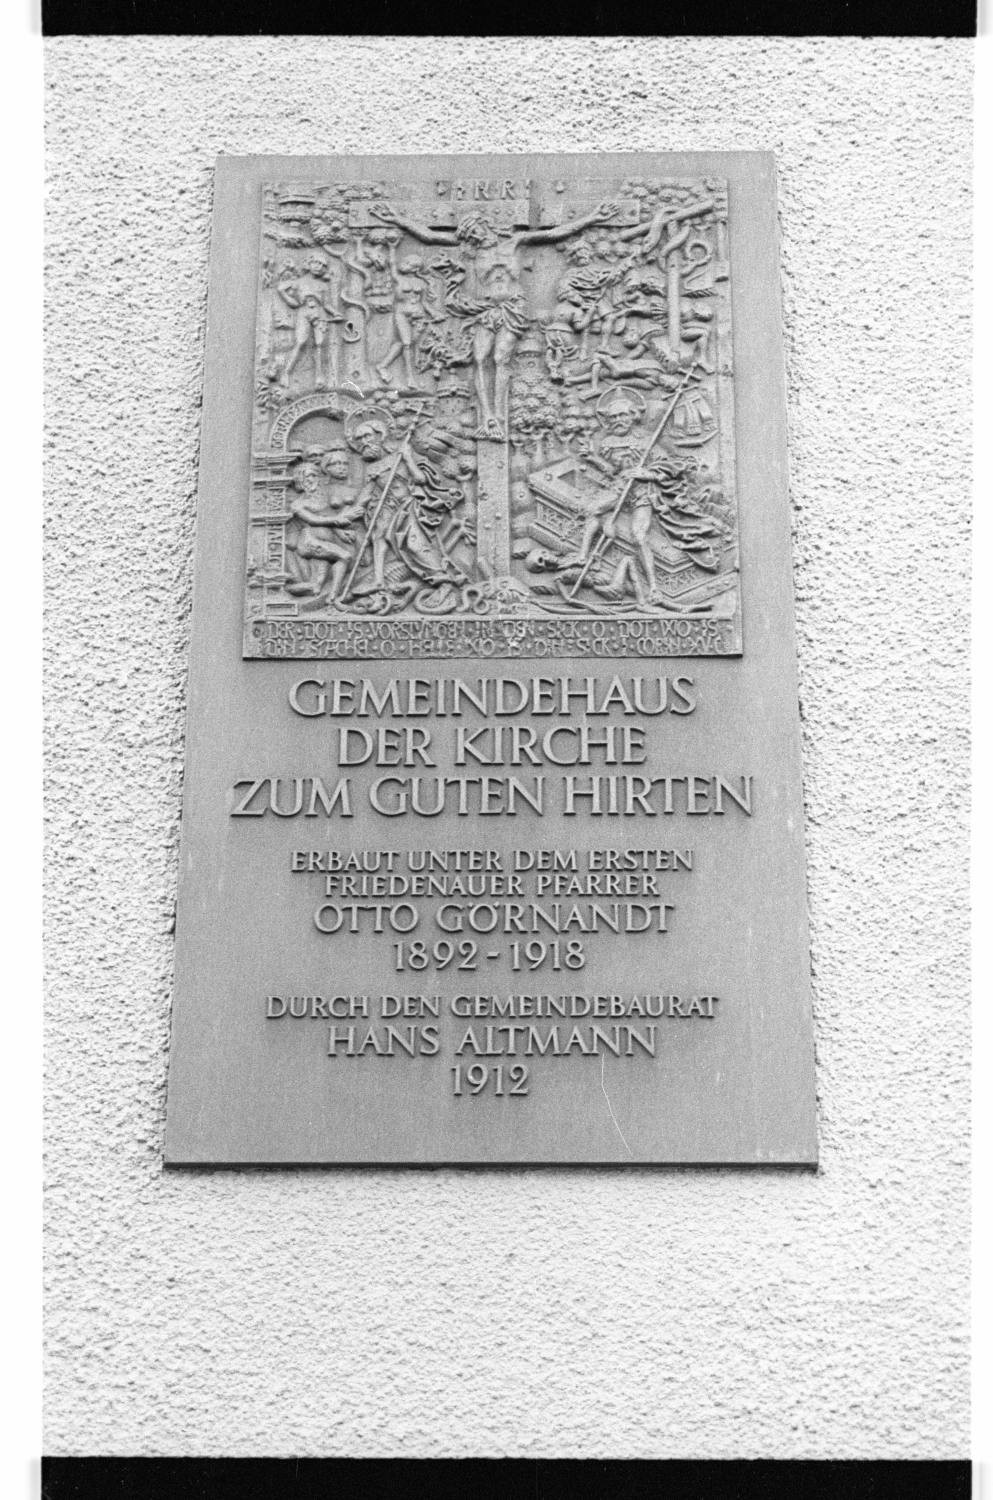 Kleinbildnegative: Gedenktafel am Gemeindehaus "Zum guten Hirten", 1982 (Museen Tempelhof-Schöneberg/Jürgen Henschel RR-F)